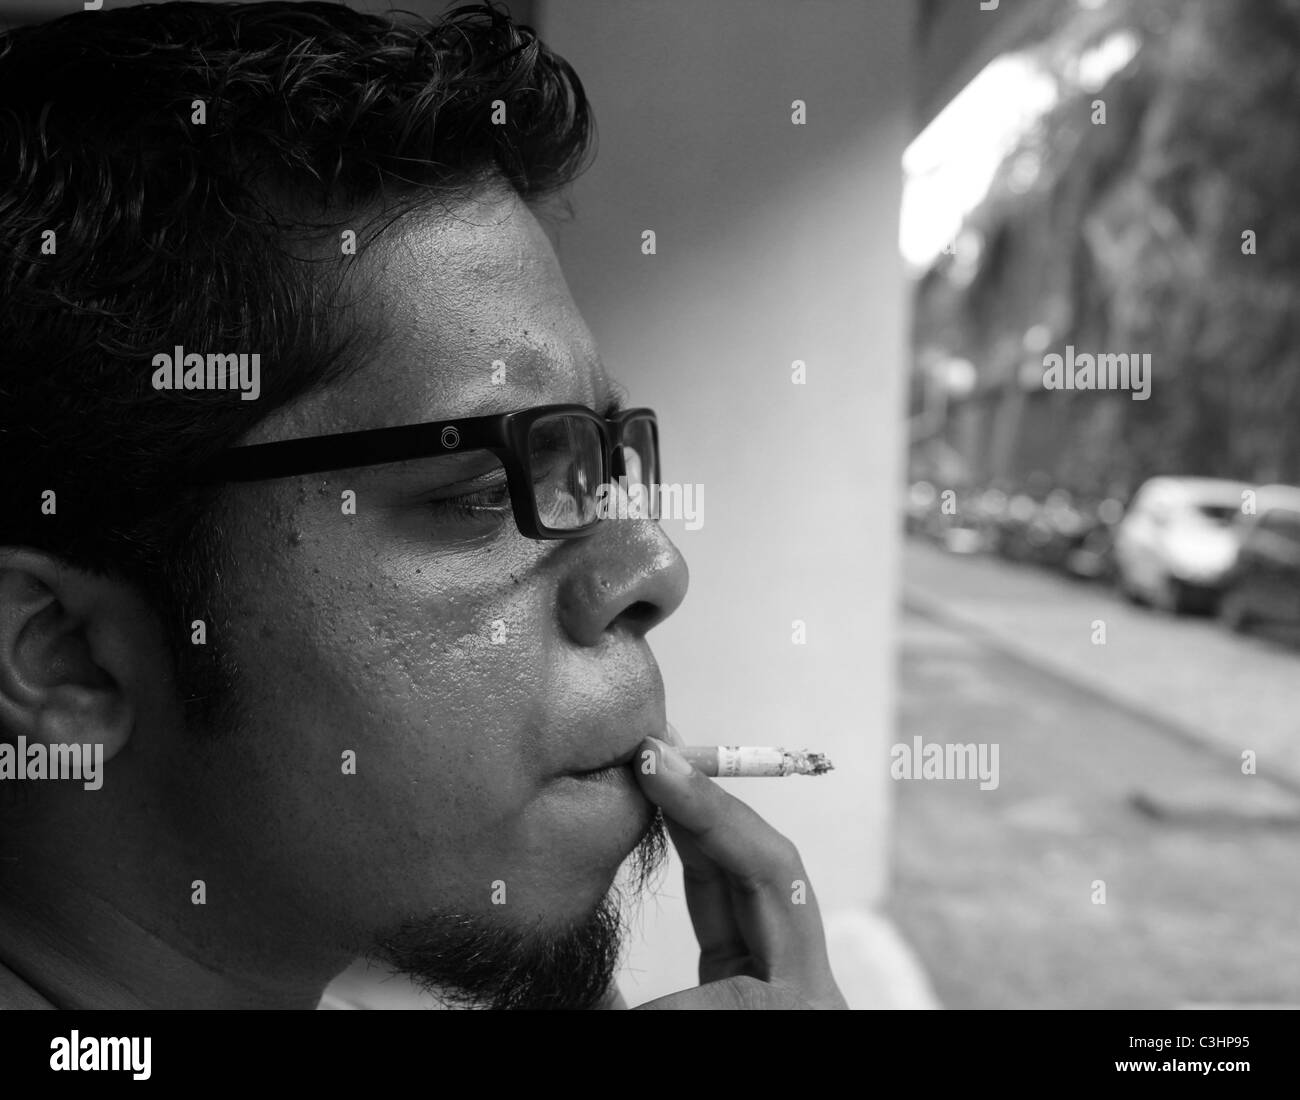 Profil de côté d'une jeune sud-asiatique spectacle spectacles lunettes cigarette tabac lunettes caractéristiques techniques b&w Banque D'Images